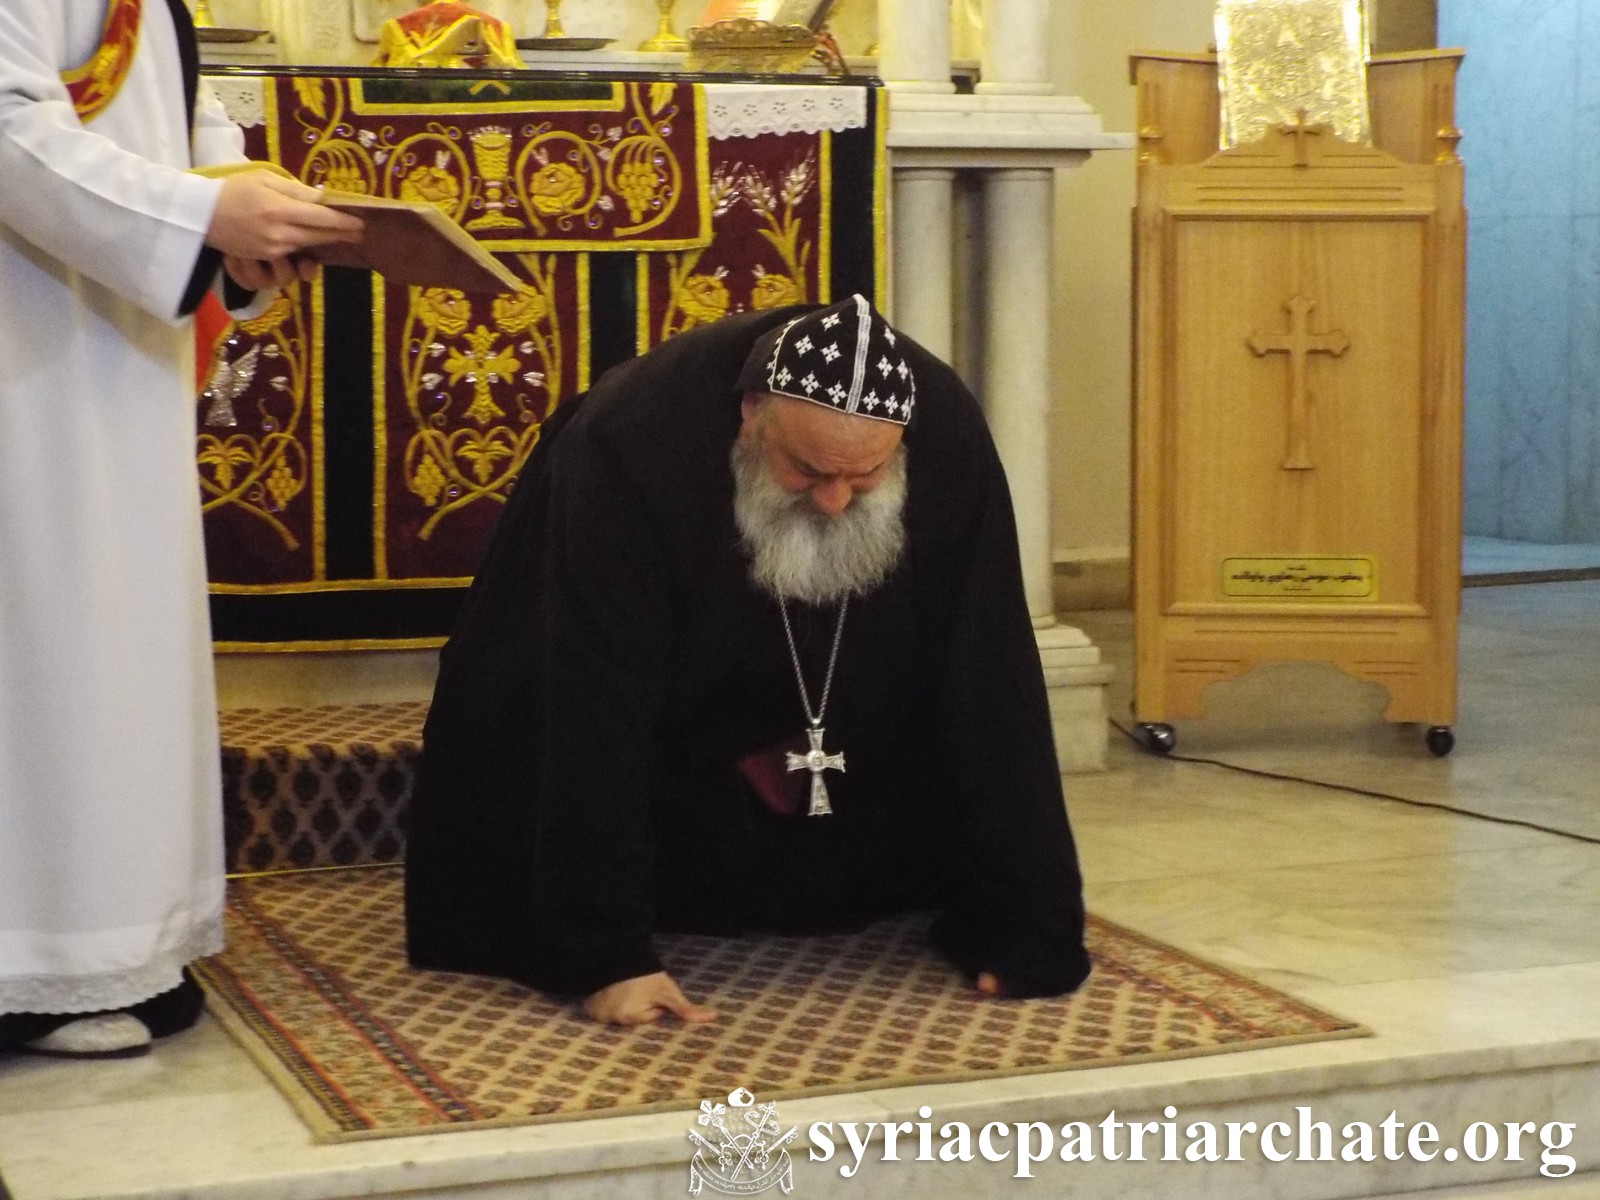 Shubqono Prayer – Damascus